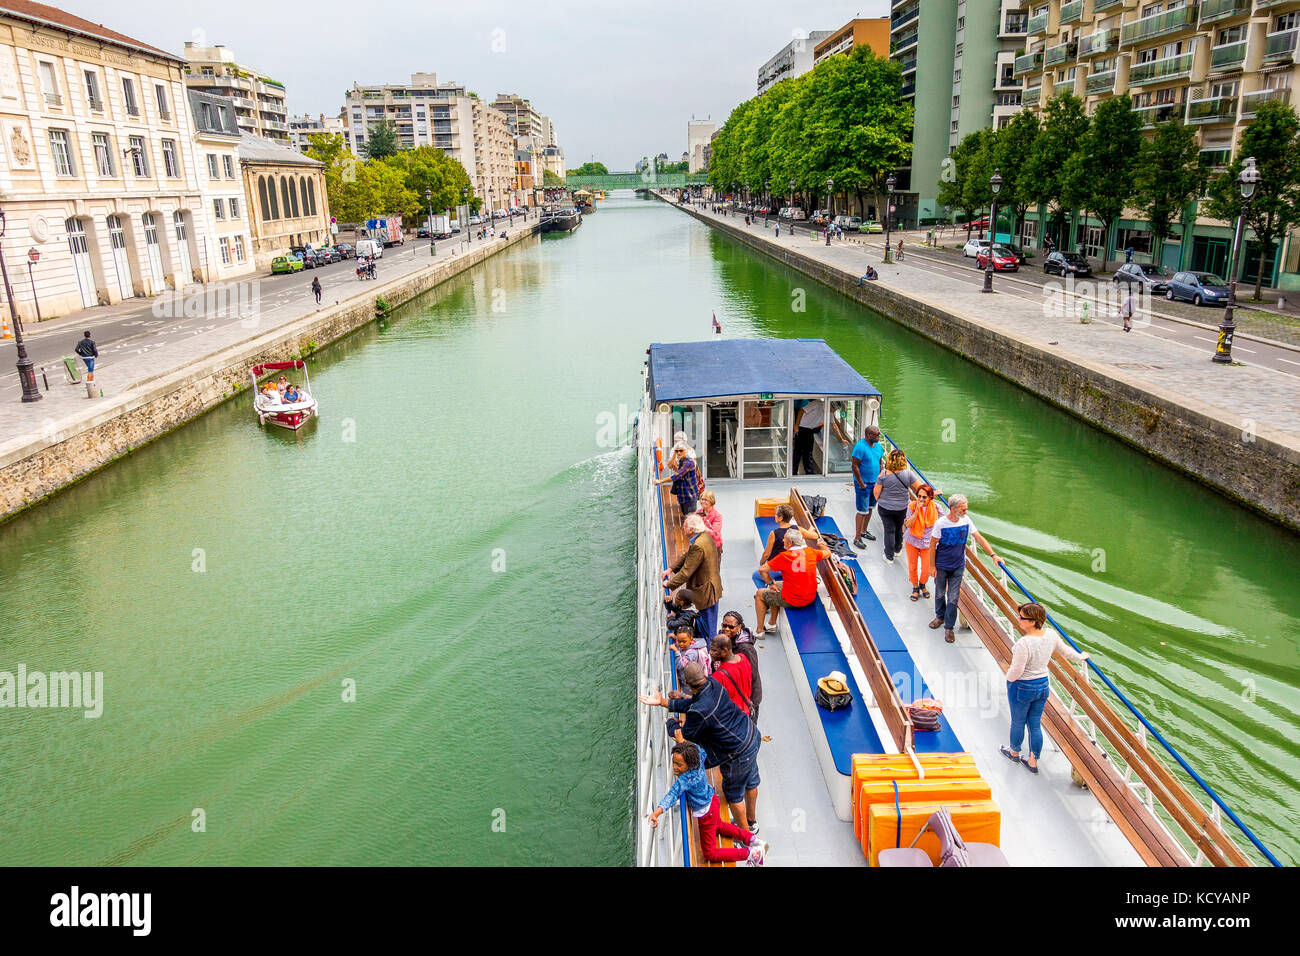 A River cruise boats leaving the Bassin de la Villette after going through the Rue de Crimée lifting bridge in Paris, France Stock Photo